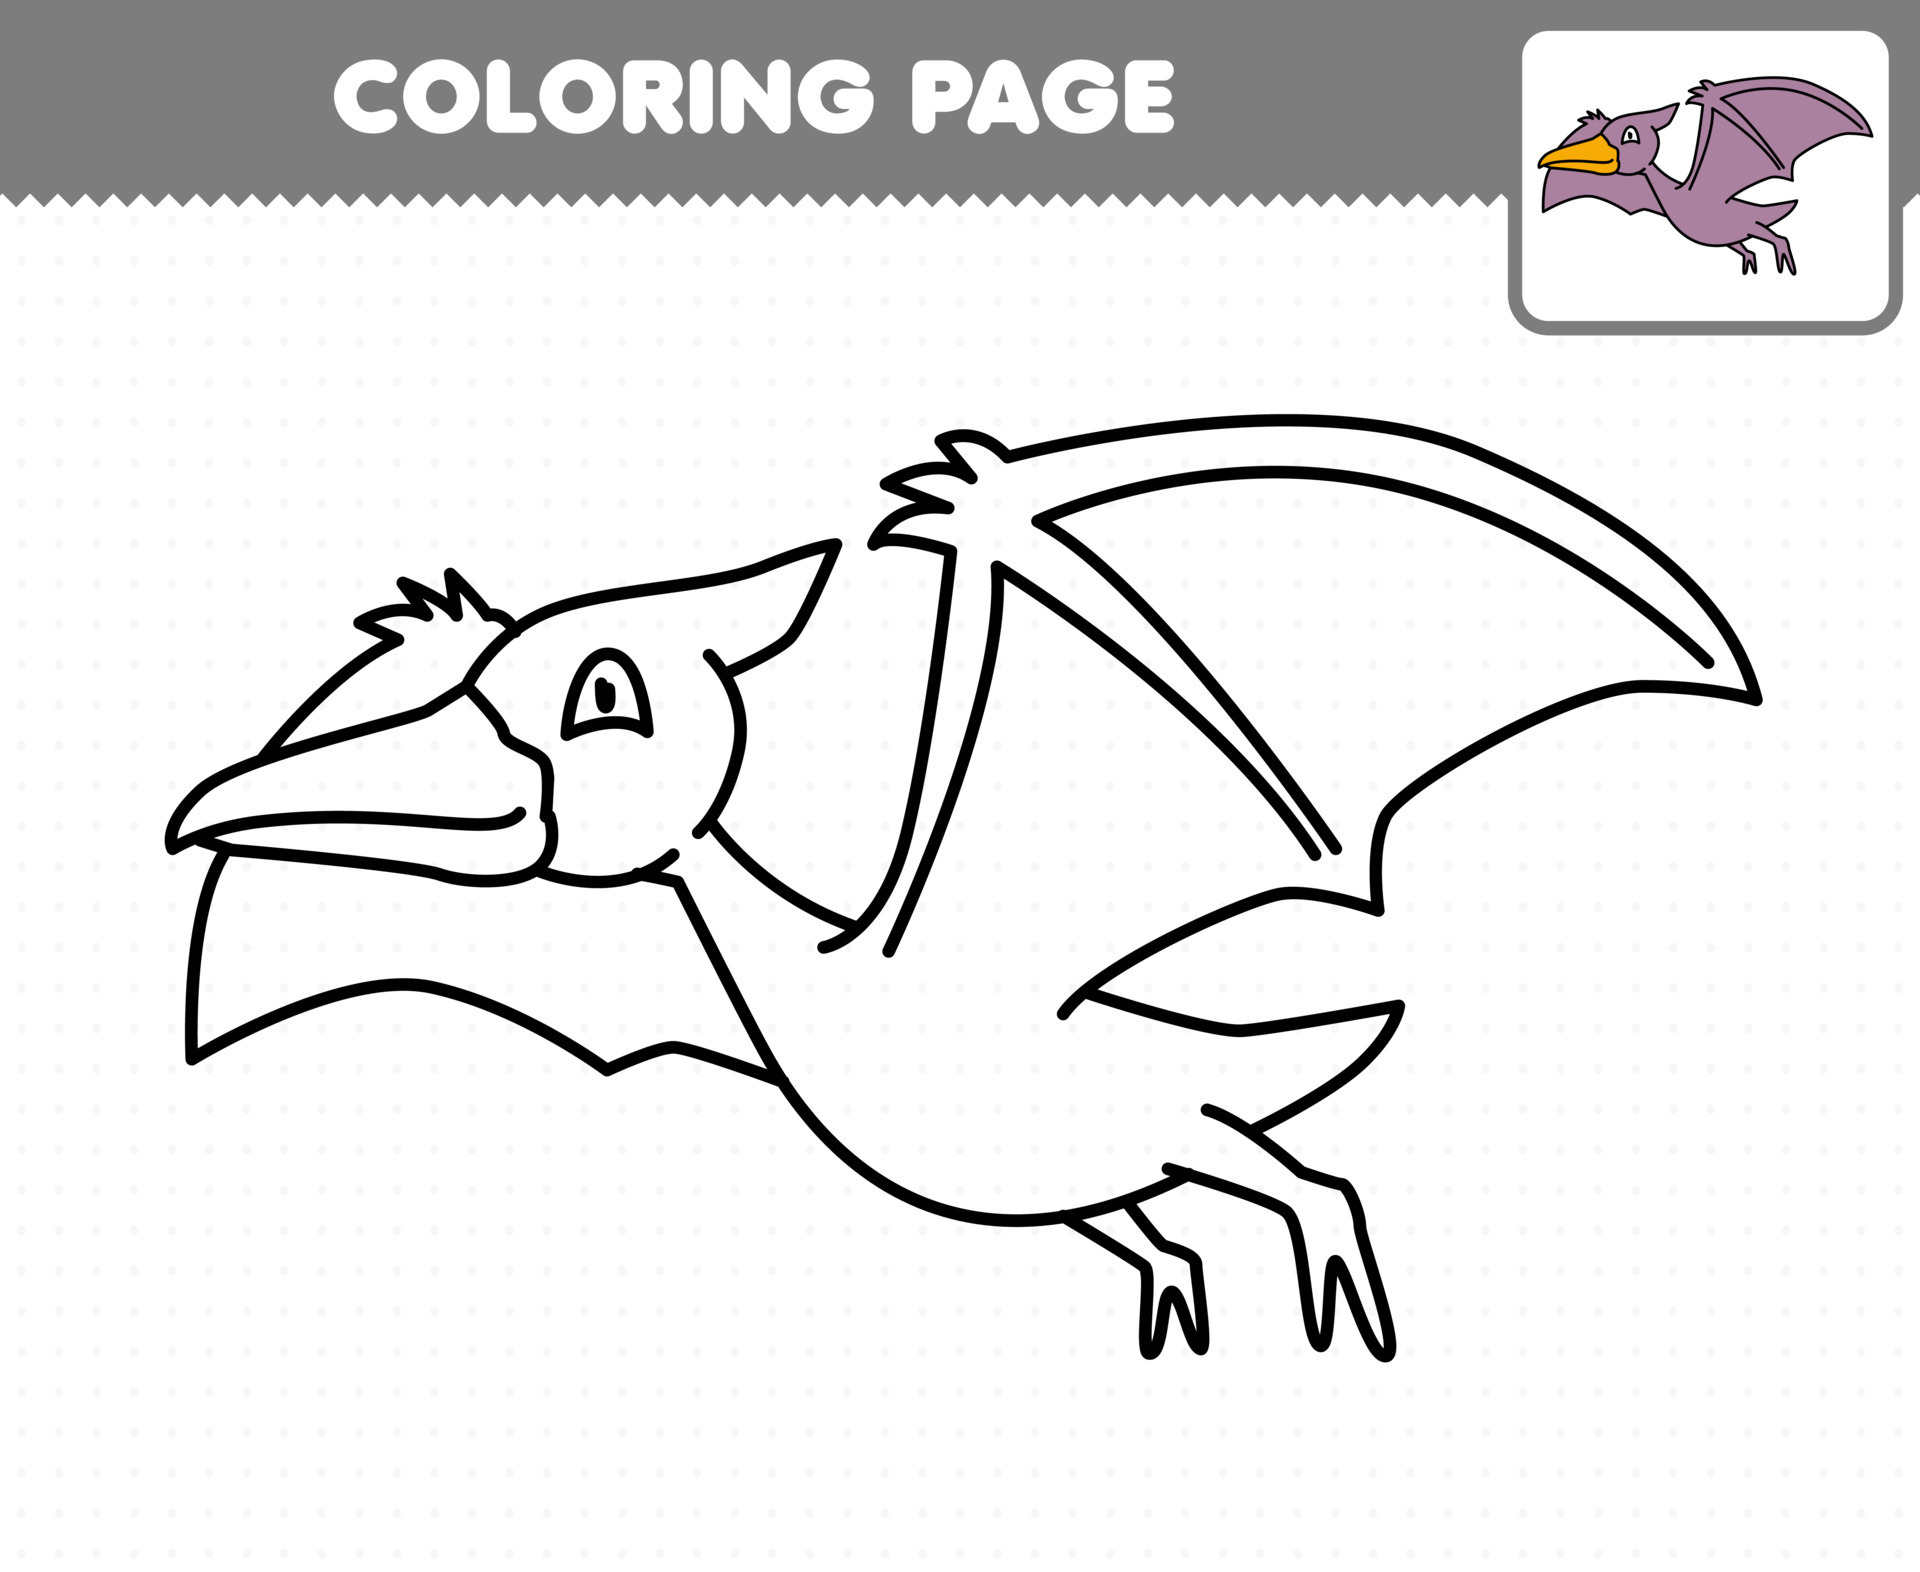 jogo de educação para crianças colorir página de desenho animado dinossauro  pré-histórico parasaurolophus 9639002 Vetor no Vecteezy